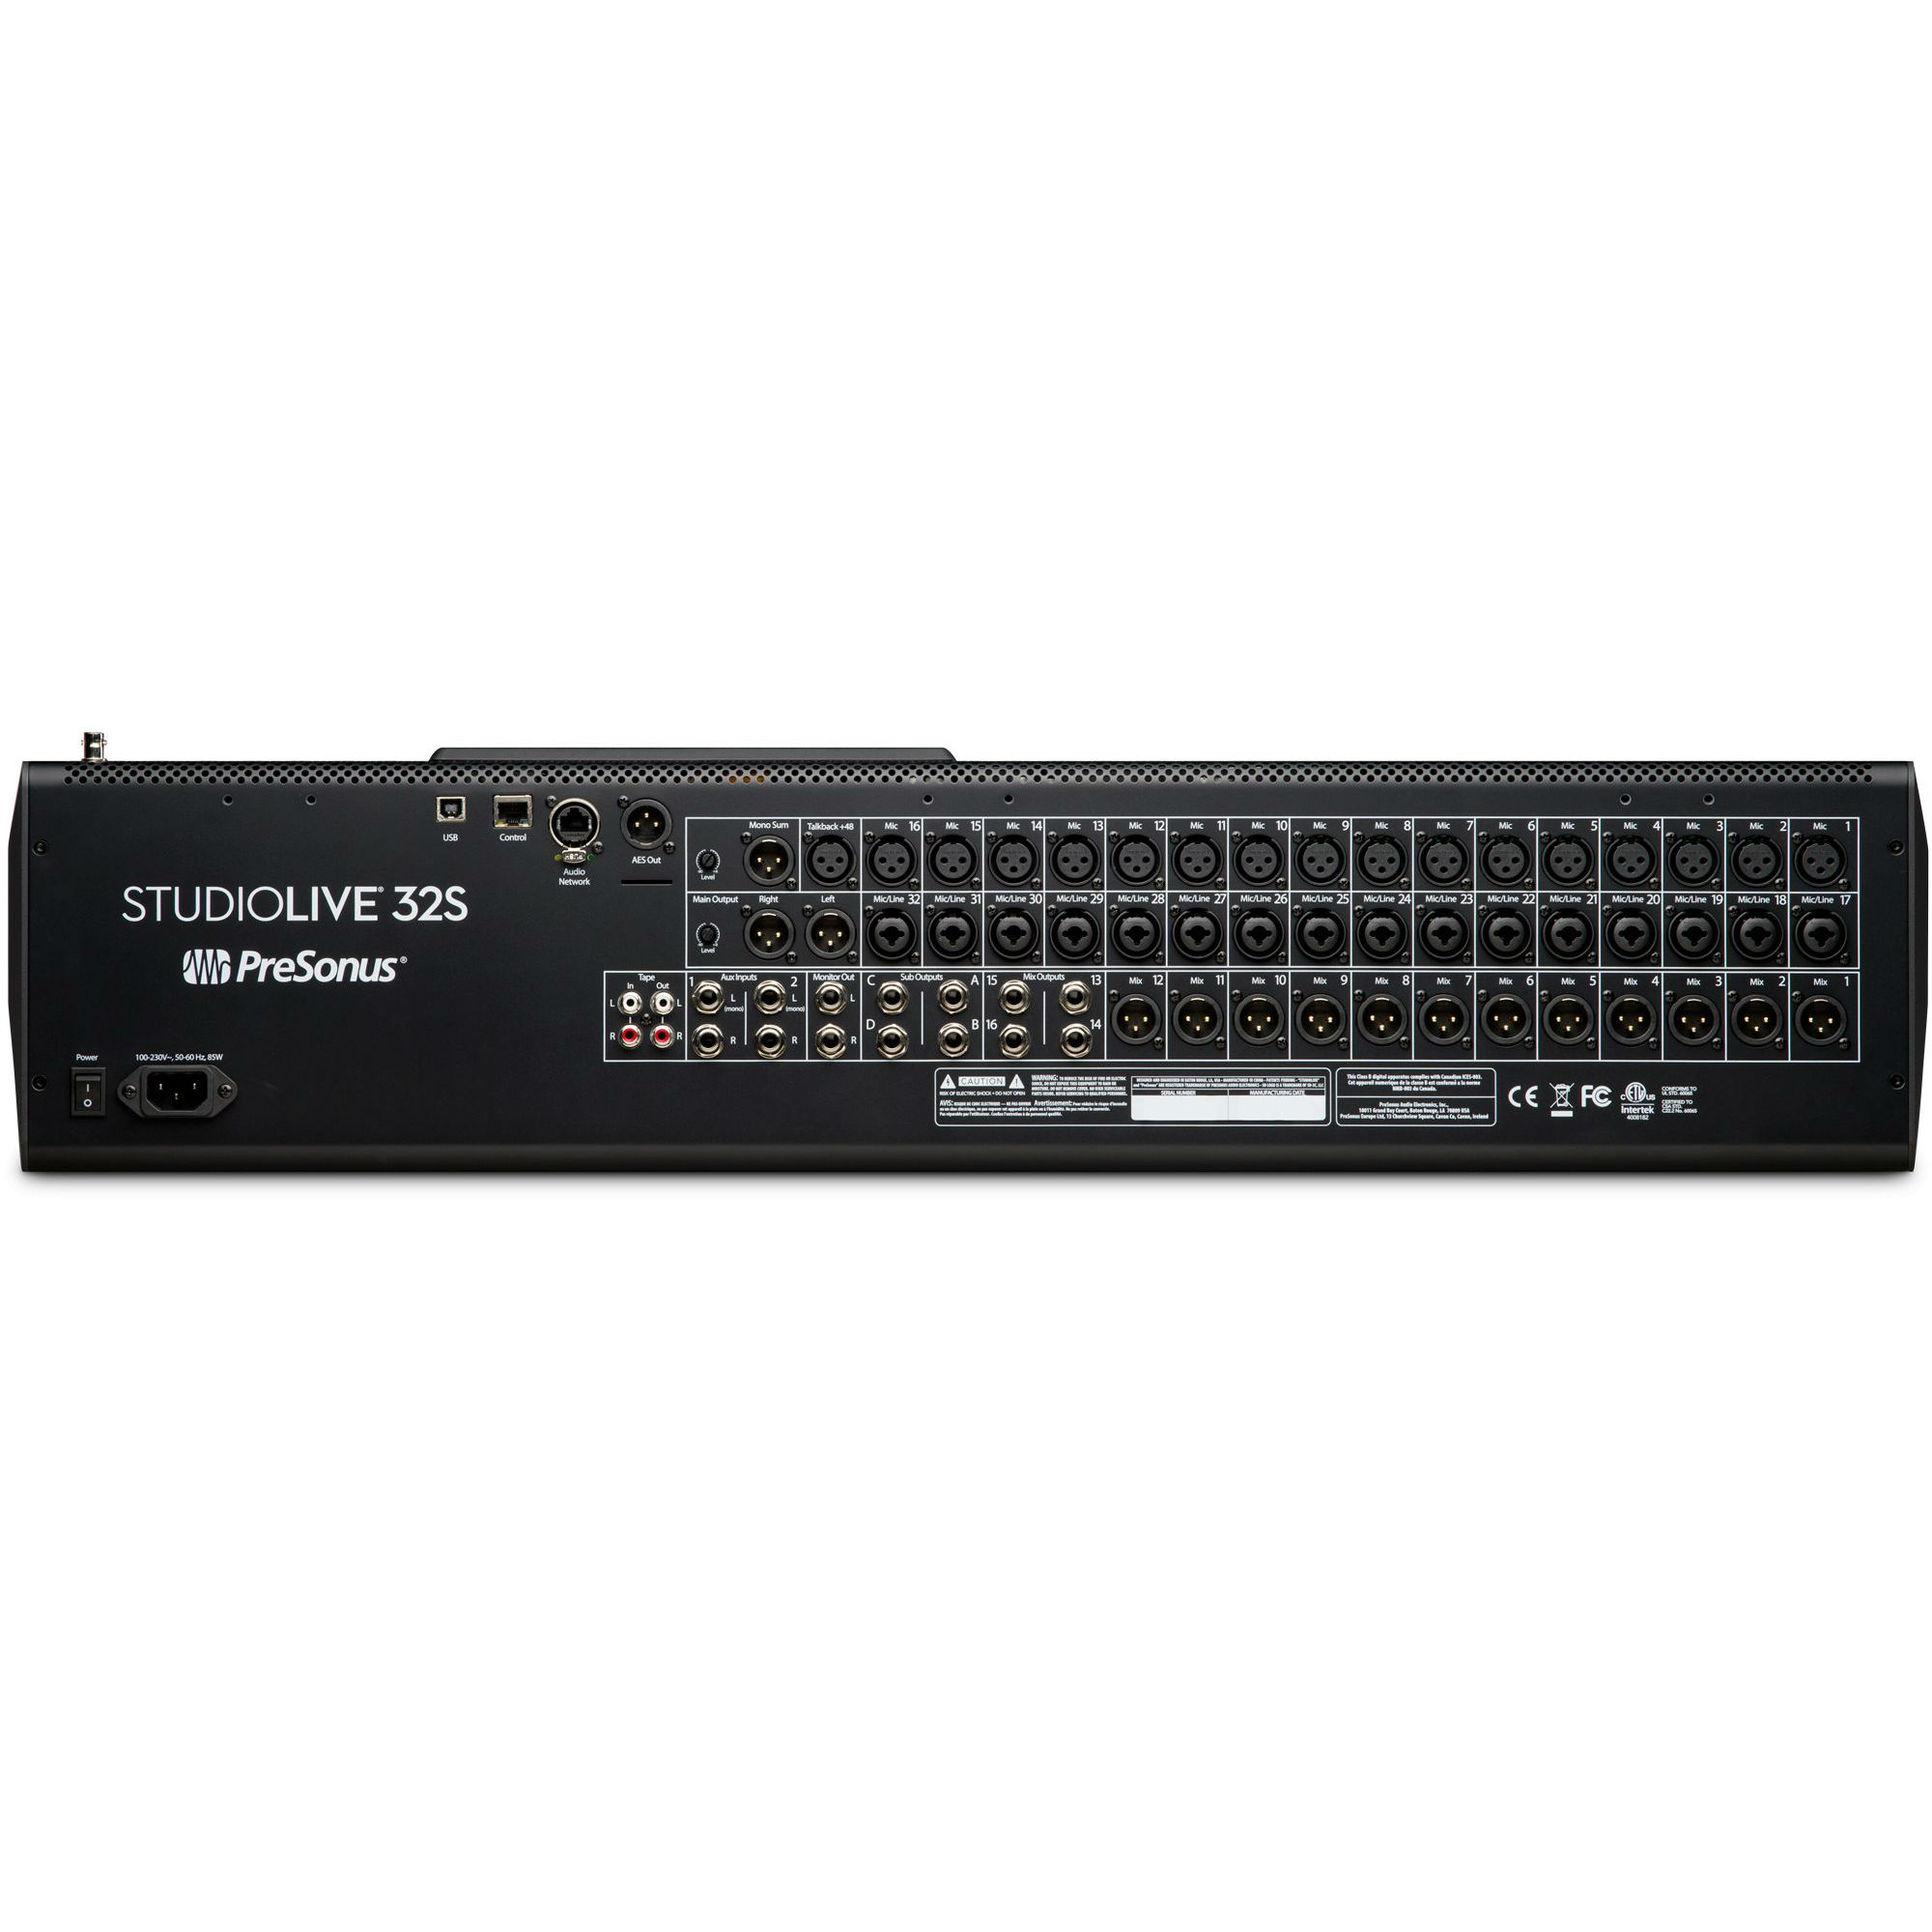 StudioLive 32S Series III